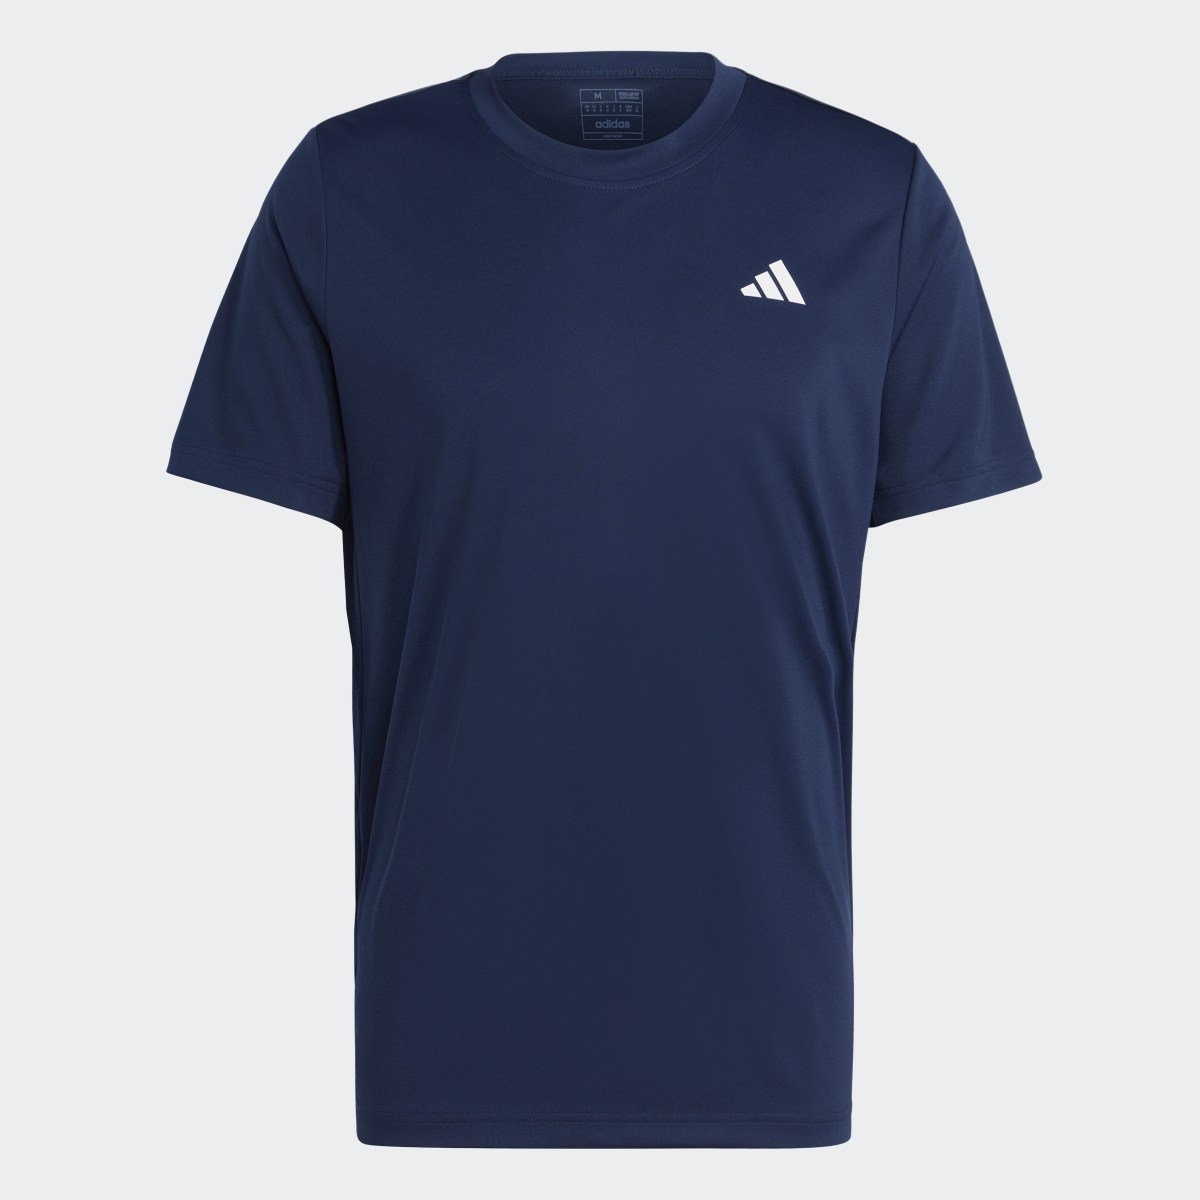 Adidas Club Tennis T-Shirt. 5